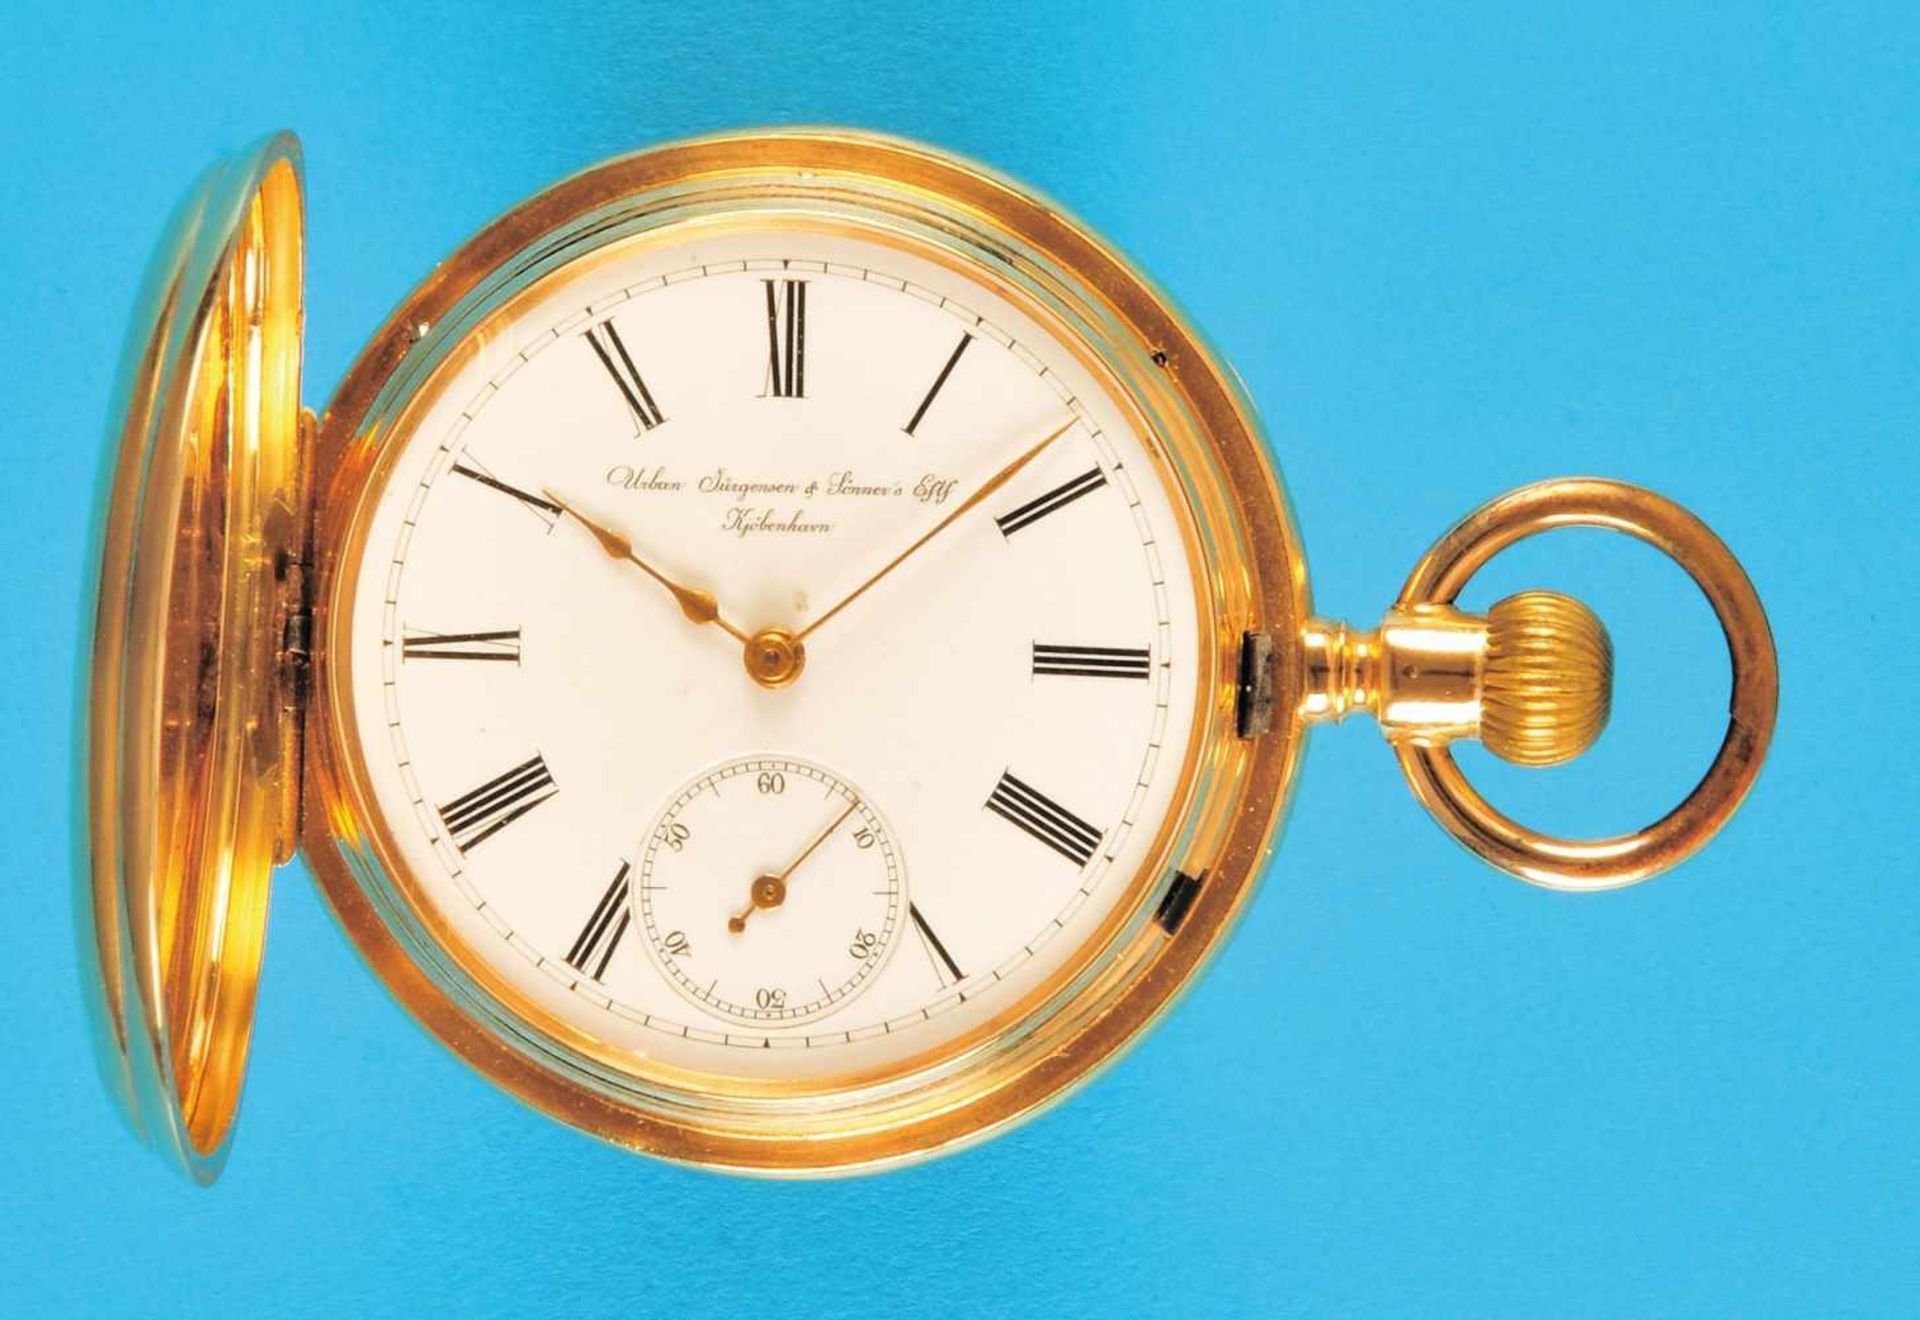 Golden pocket watch with spring cover, half-savonette bez. Urban Jürgensen & Sönner's,